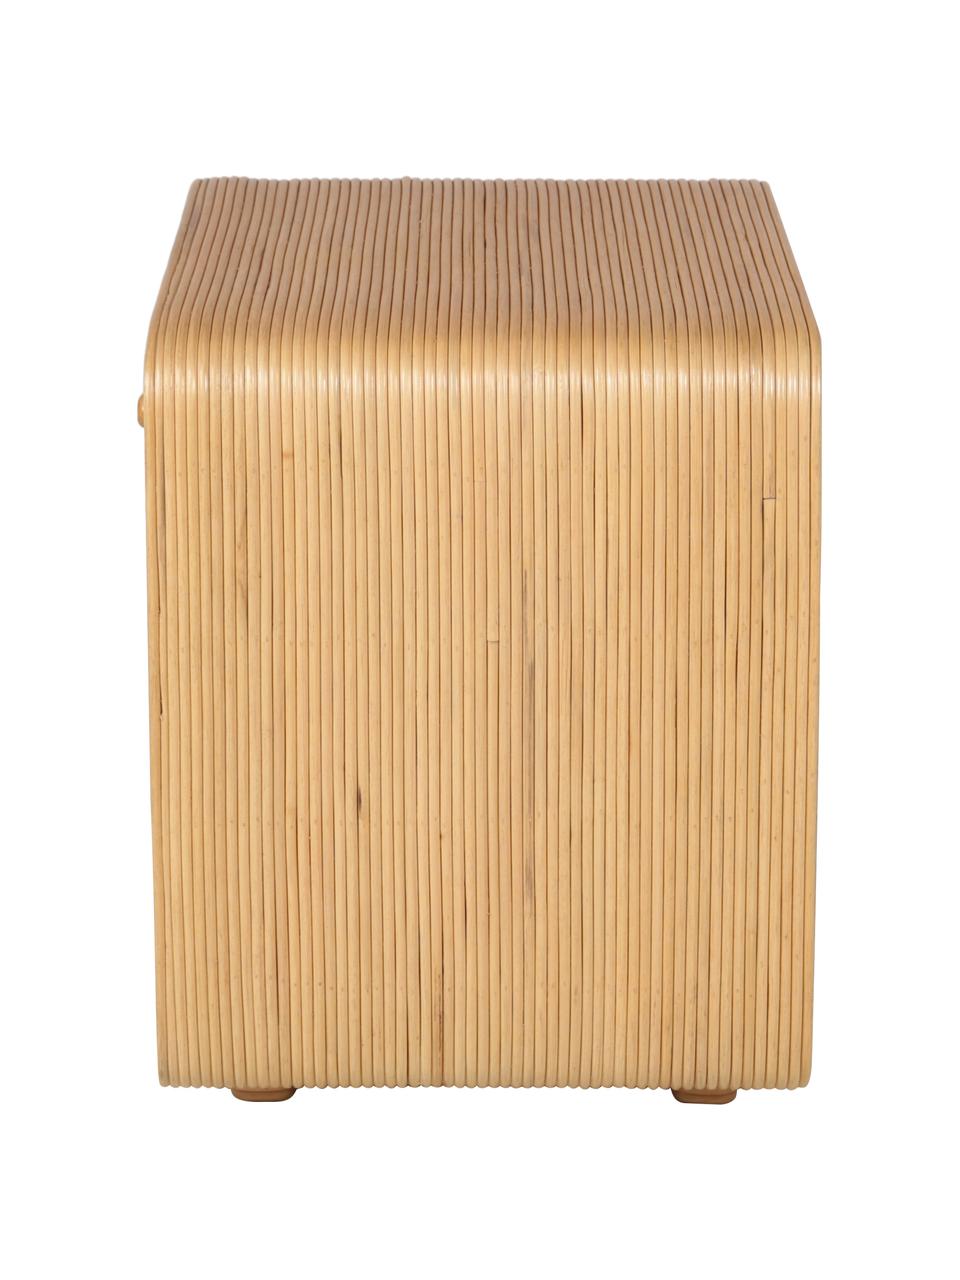 Ratanový noční stolek se zásuvkou Wapa, Ratan, Světle hnědá, Š 57 cm, V 52 cm